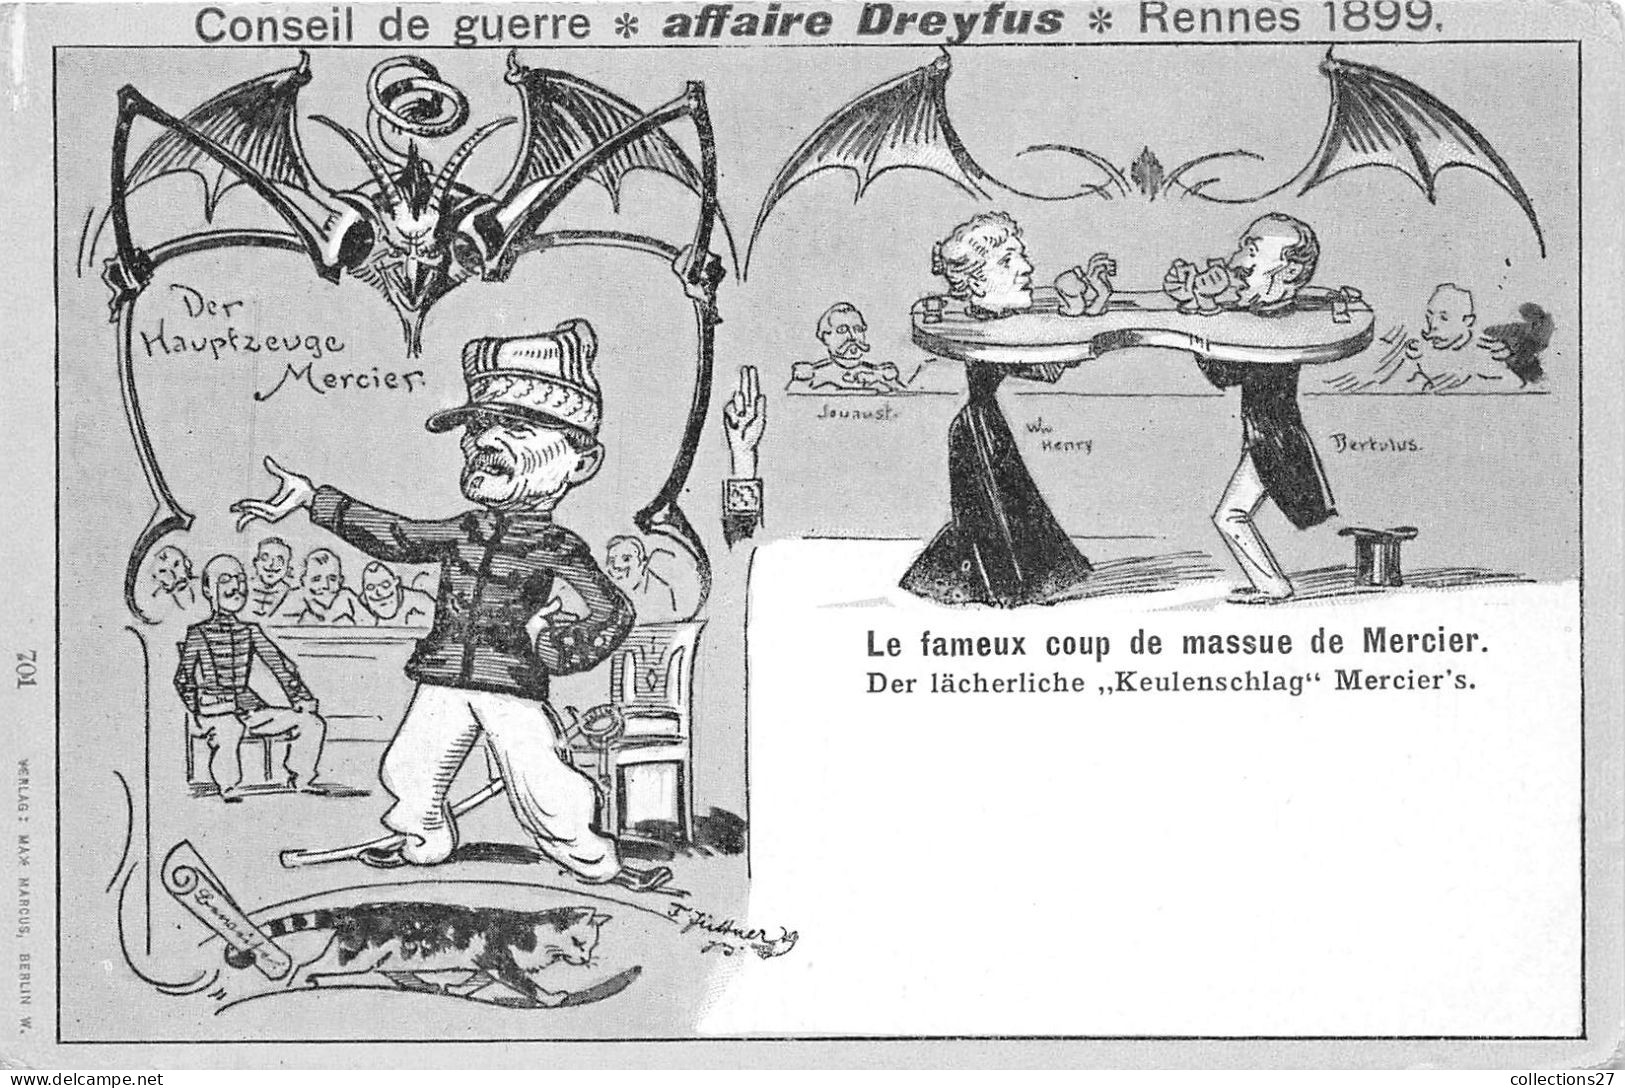 AFFAIRE DREYFUS- CONSEIL DE GUERRE- RENNES 1899 - LE FAMEUX COUP DE MASSURE DE MERCIER - People